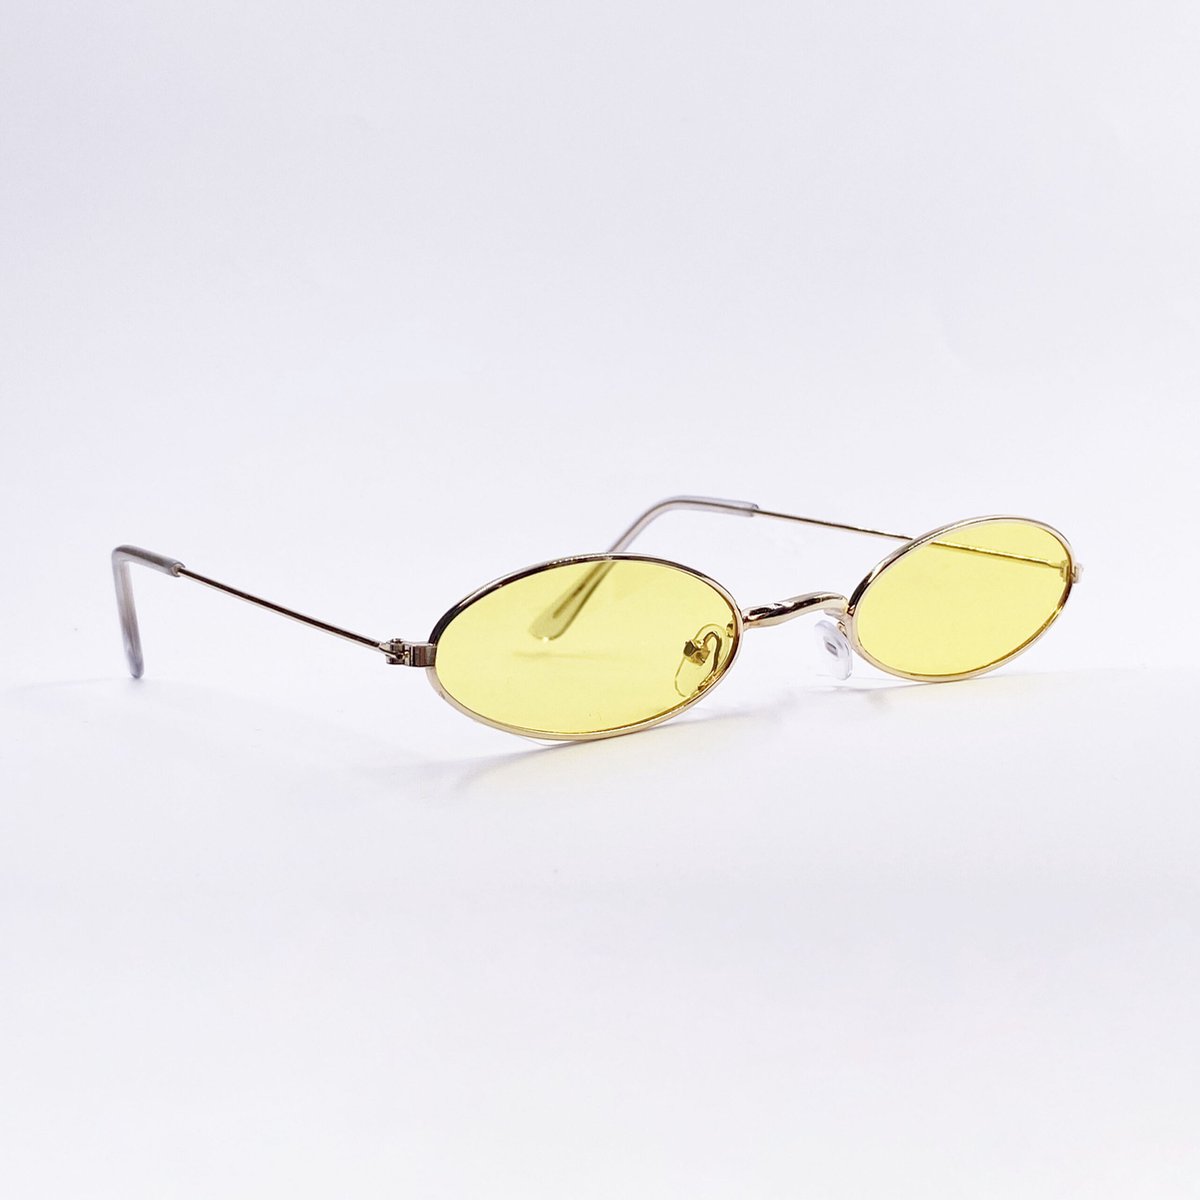 Vintage Glasses - festivalbril - zonnebril - feestbril - festival spacebril - festivalzonnebril | Geel | PartyGlasses